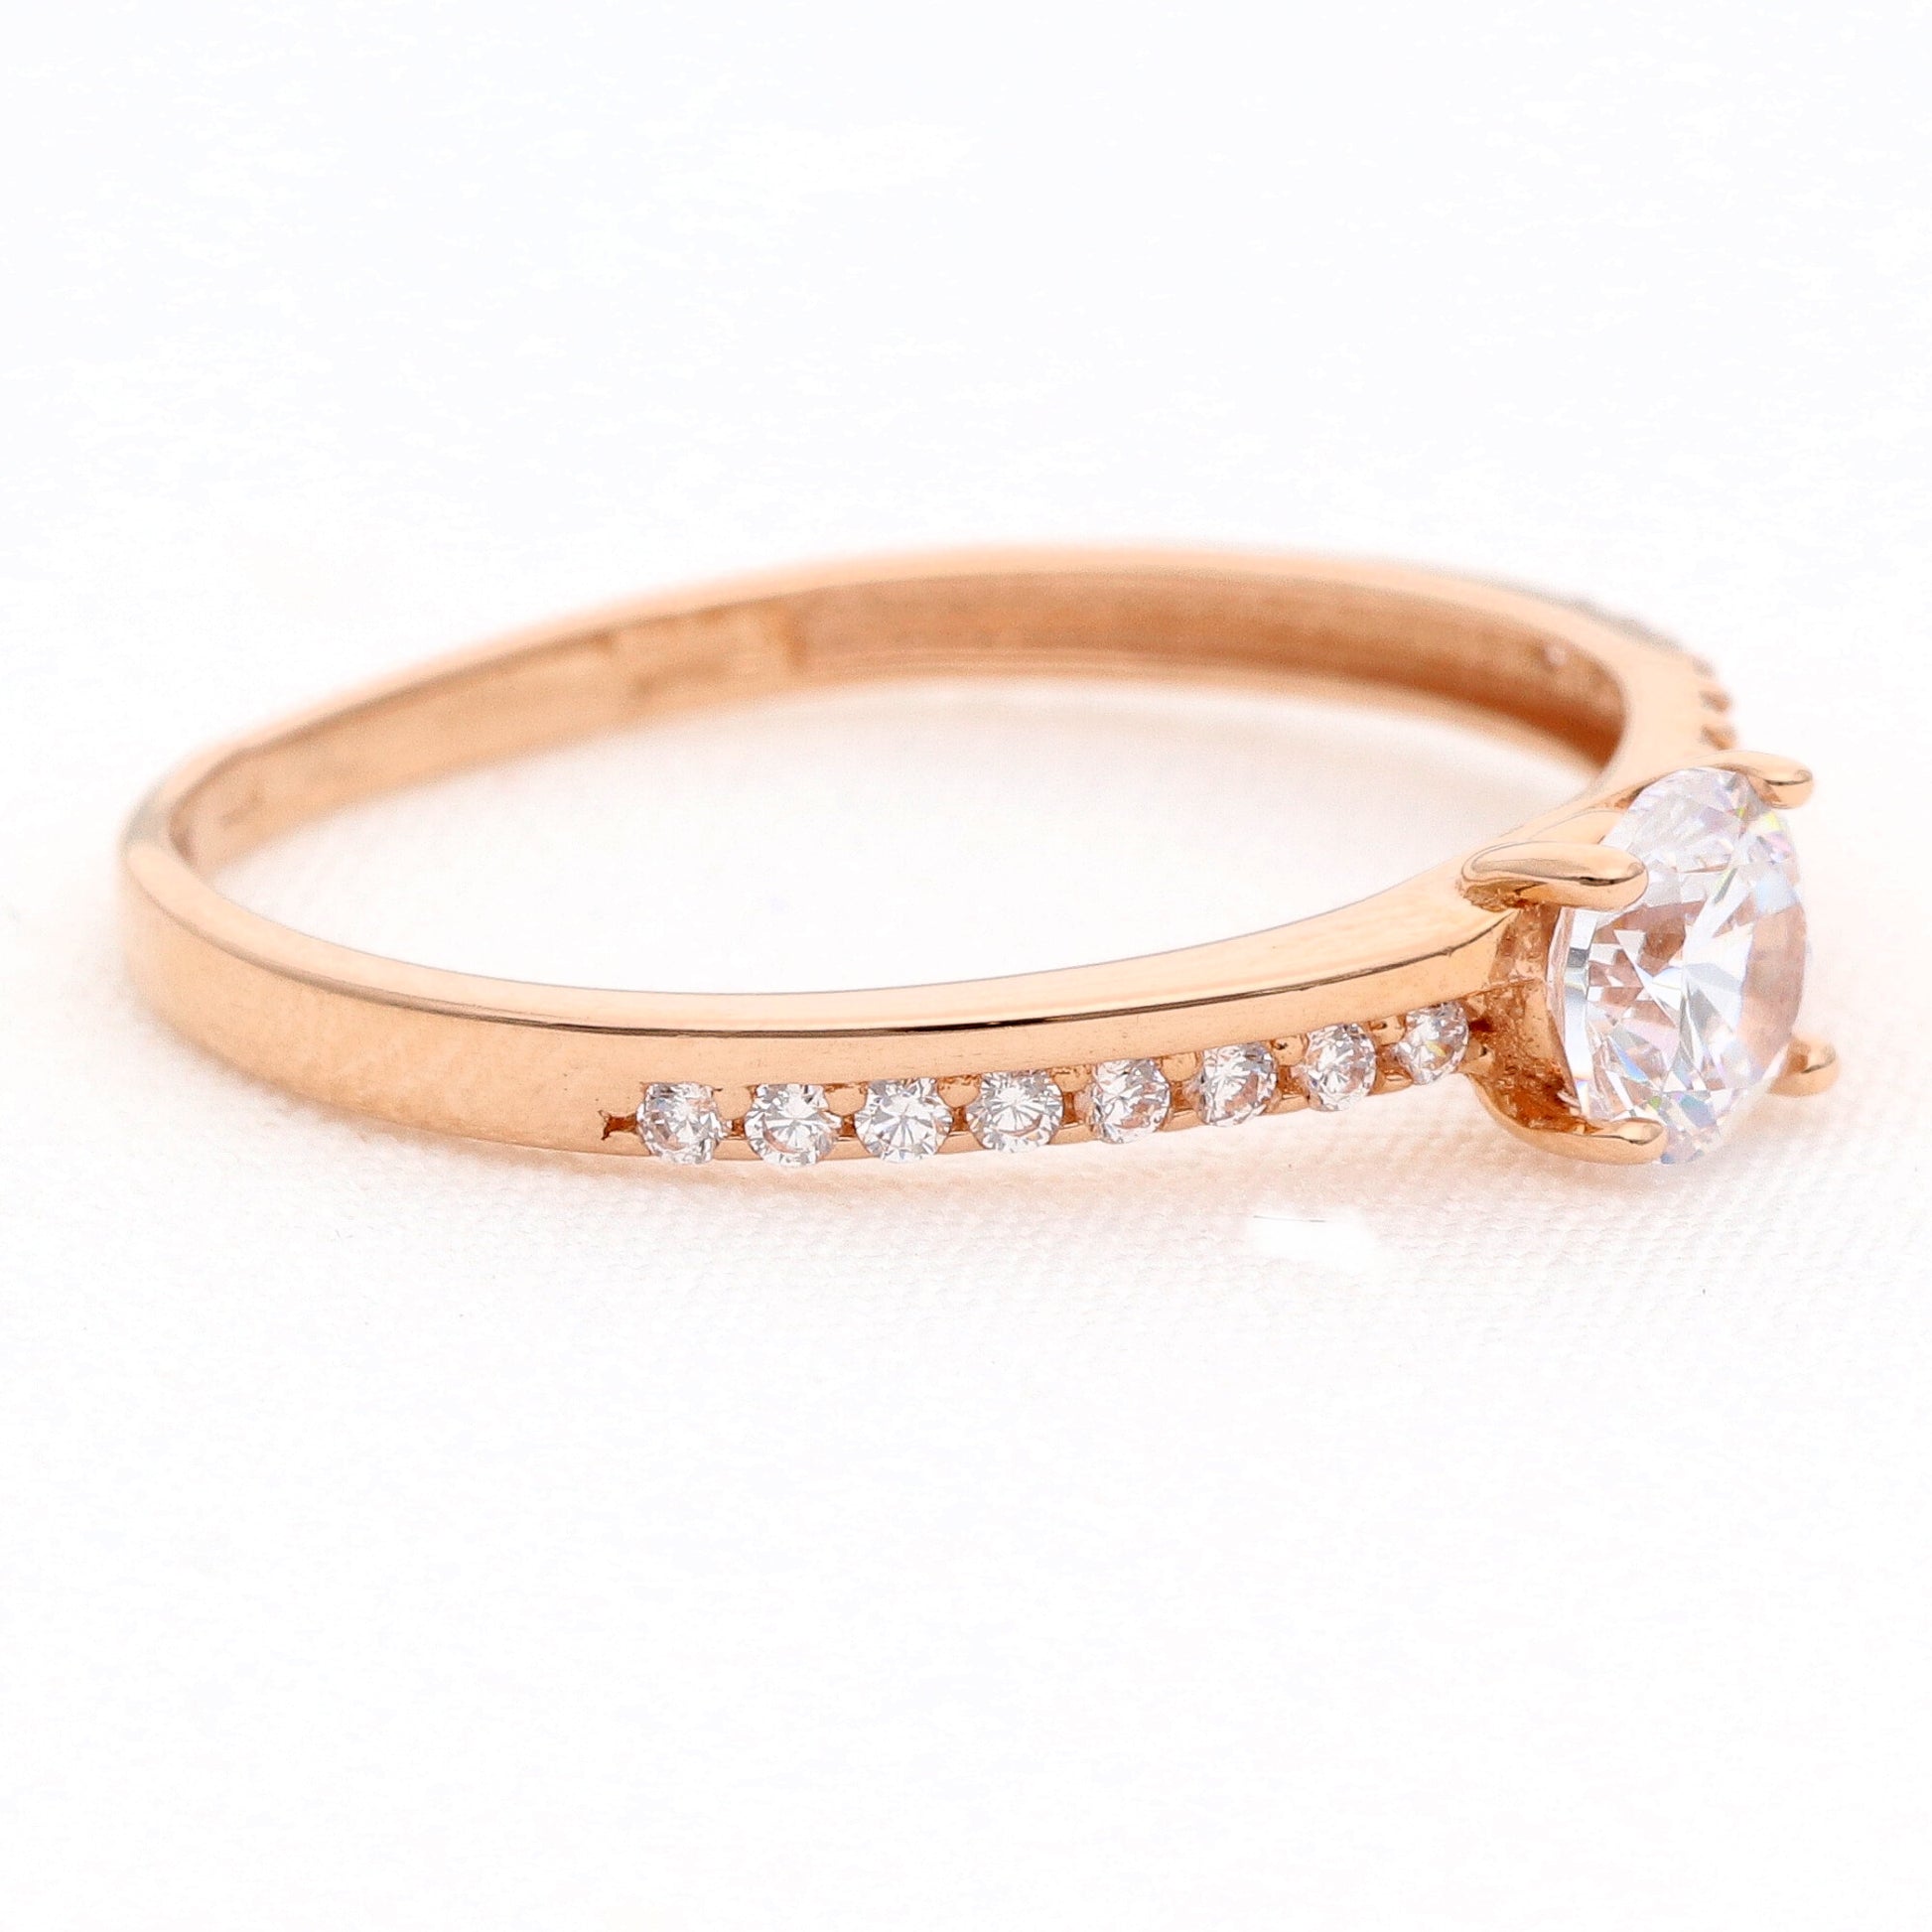 Auksinis žiedas su cirkoniais vestuviniaiziedai.lt